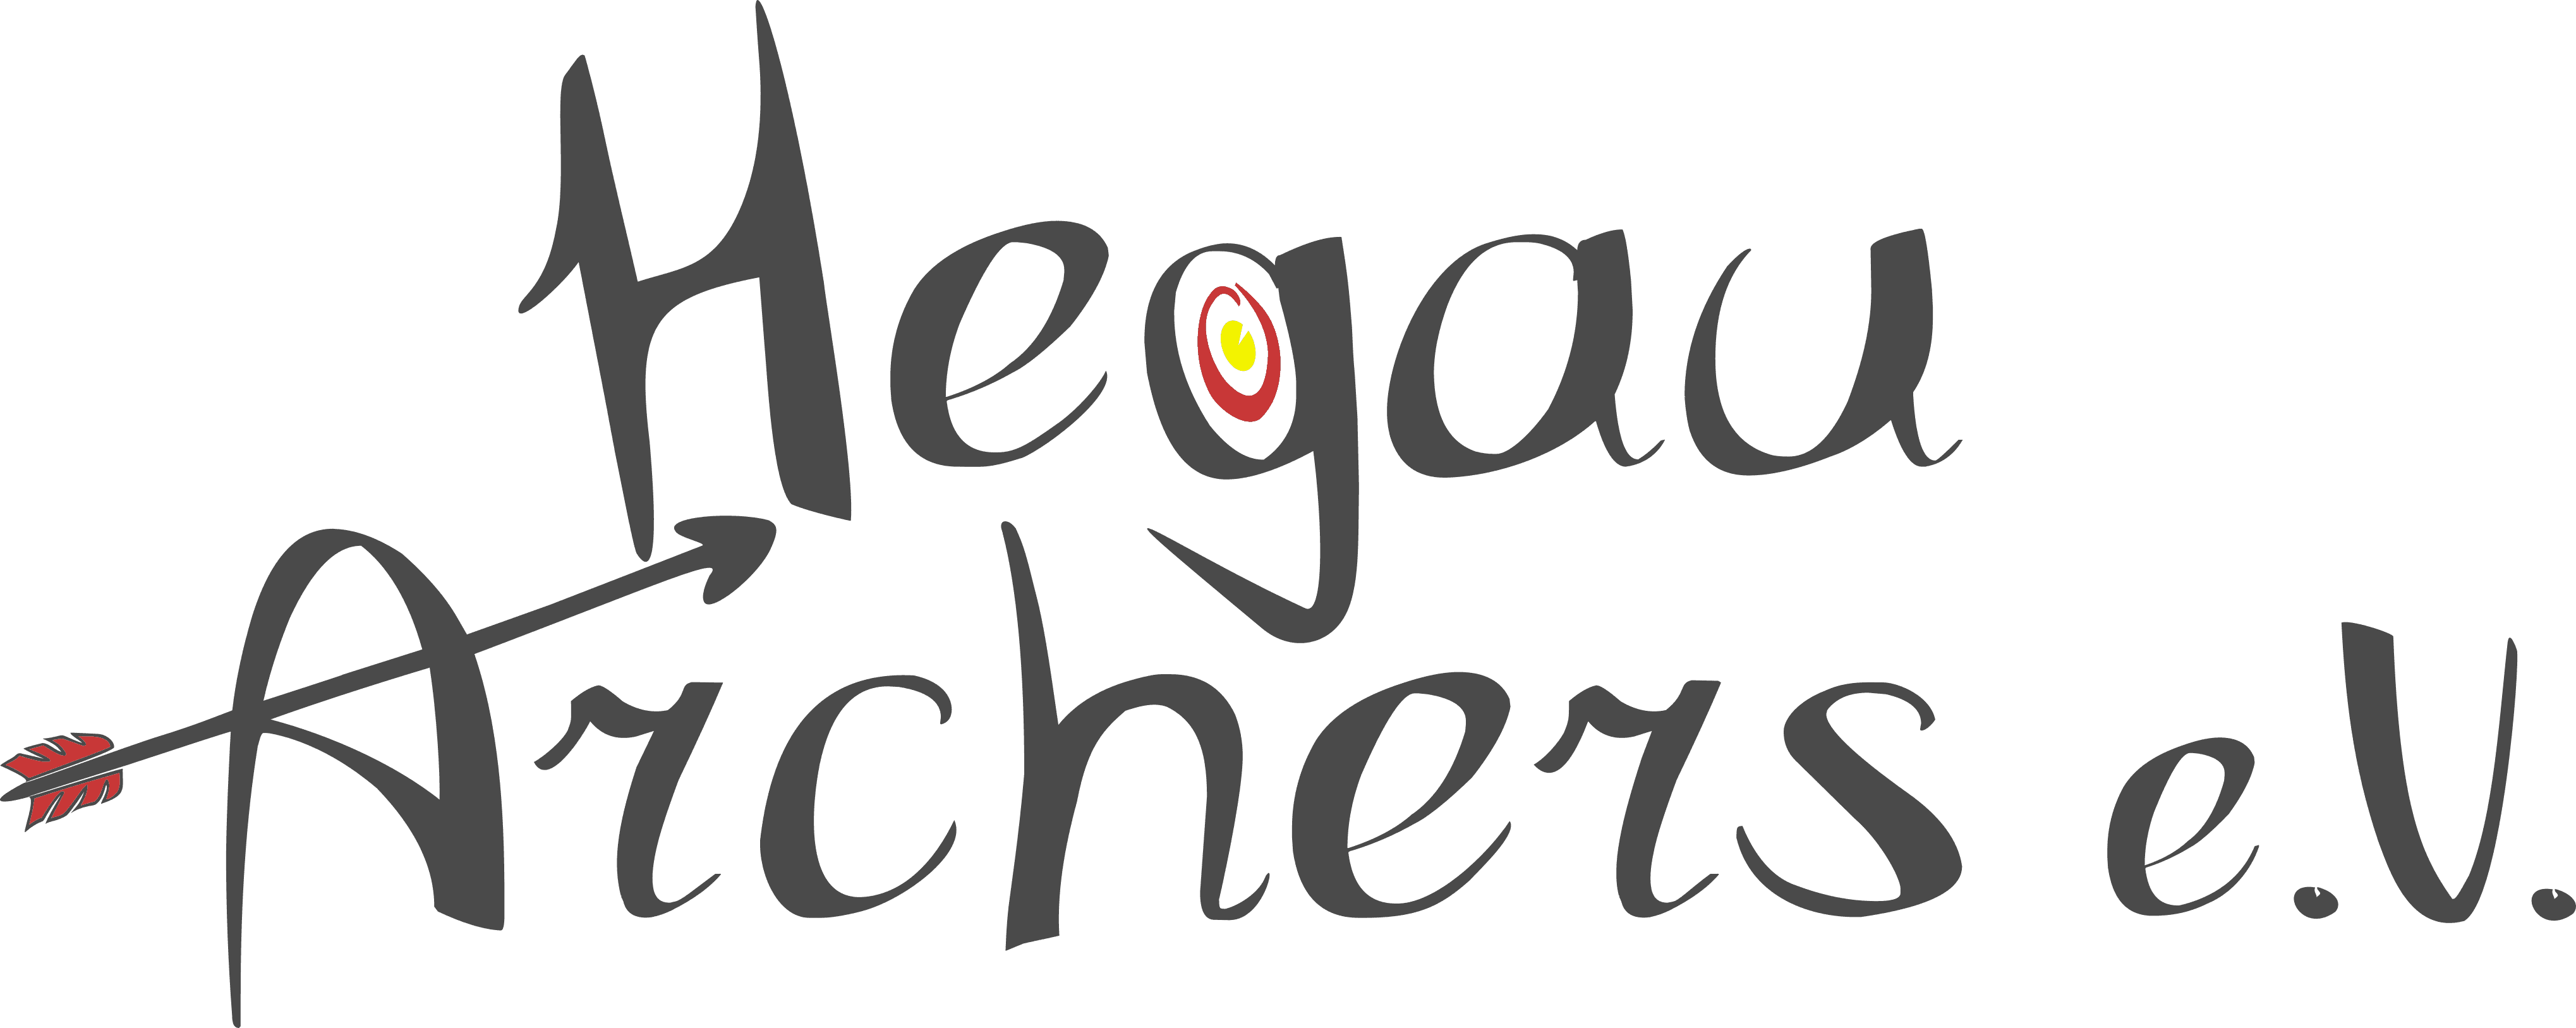 Der Hegau Archers e.V. Logo